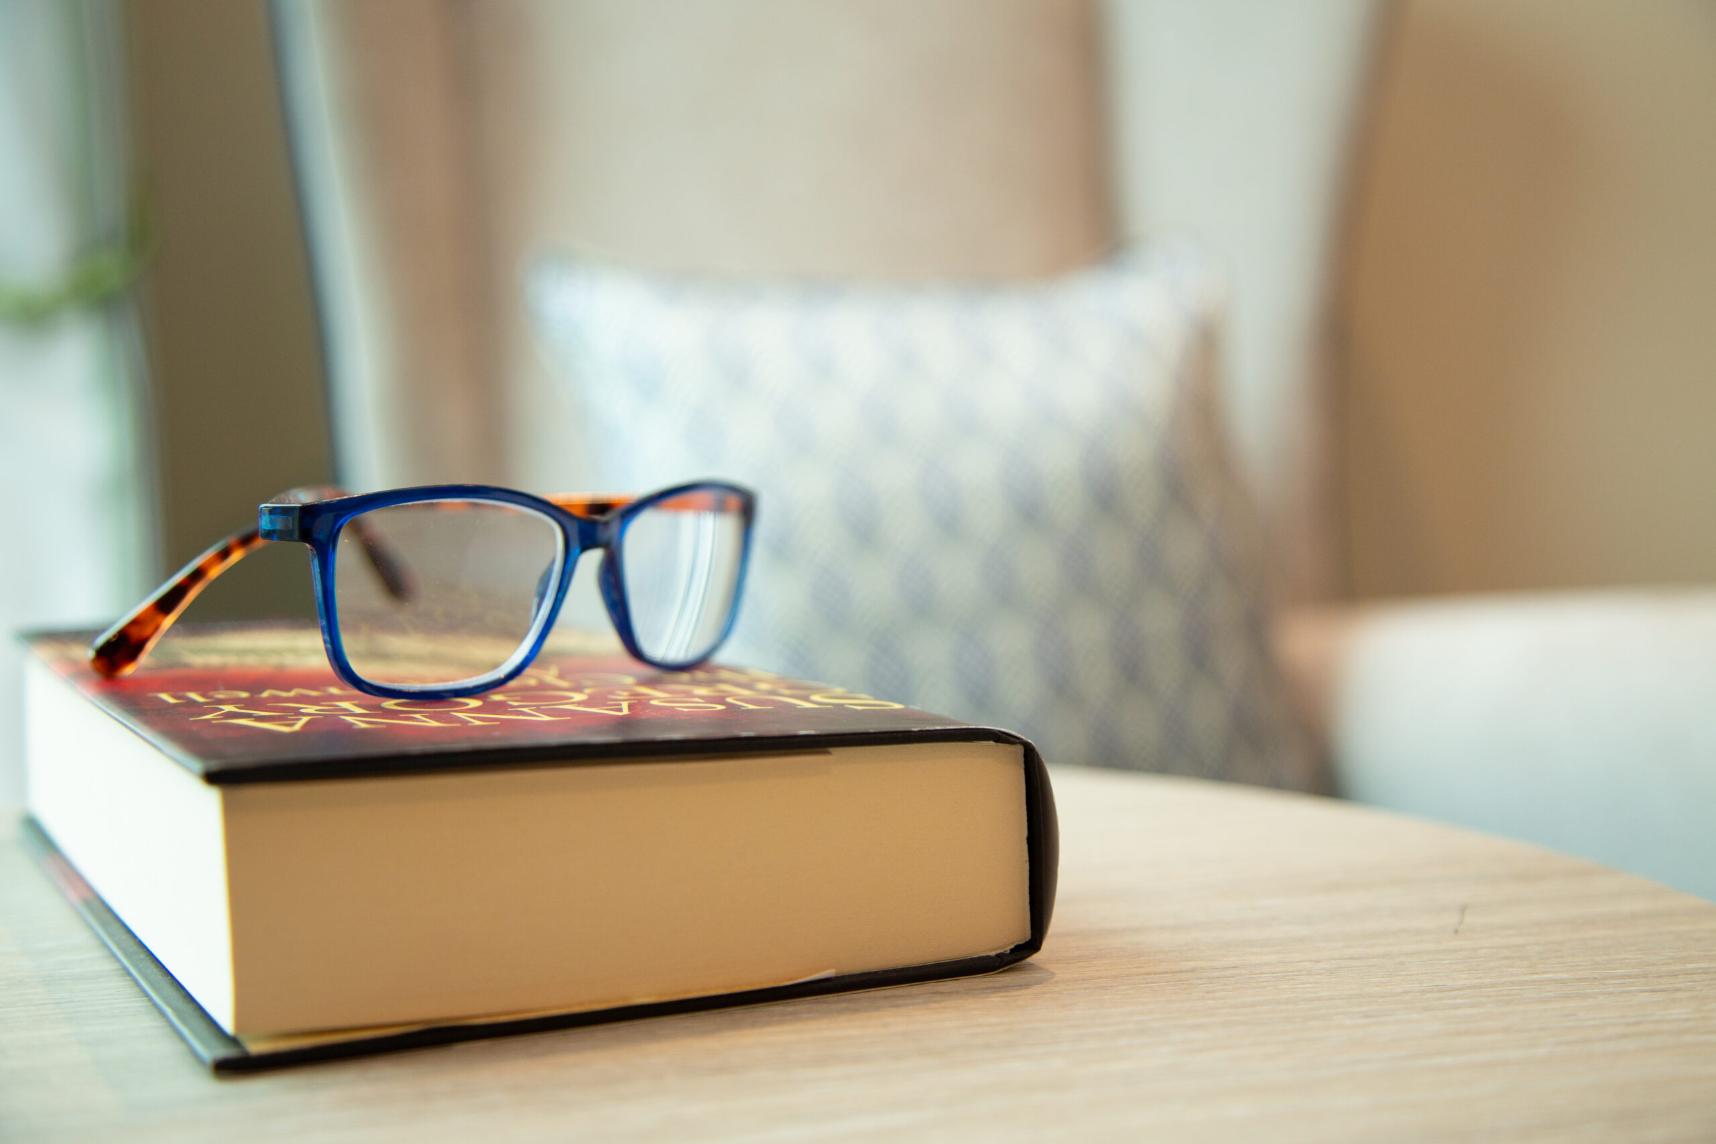 glasses-on-bedside-book